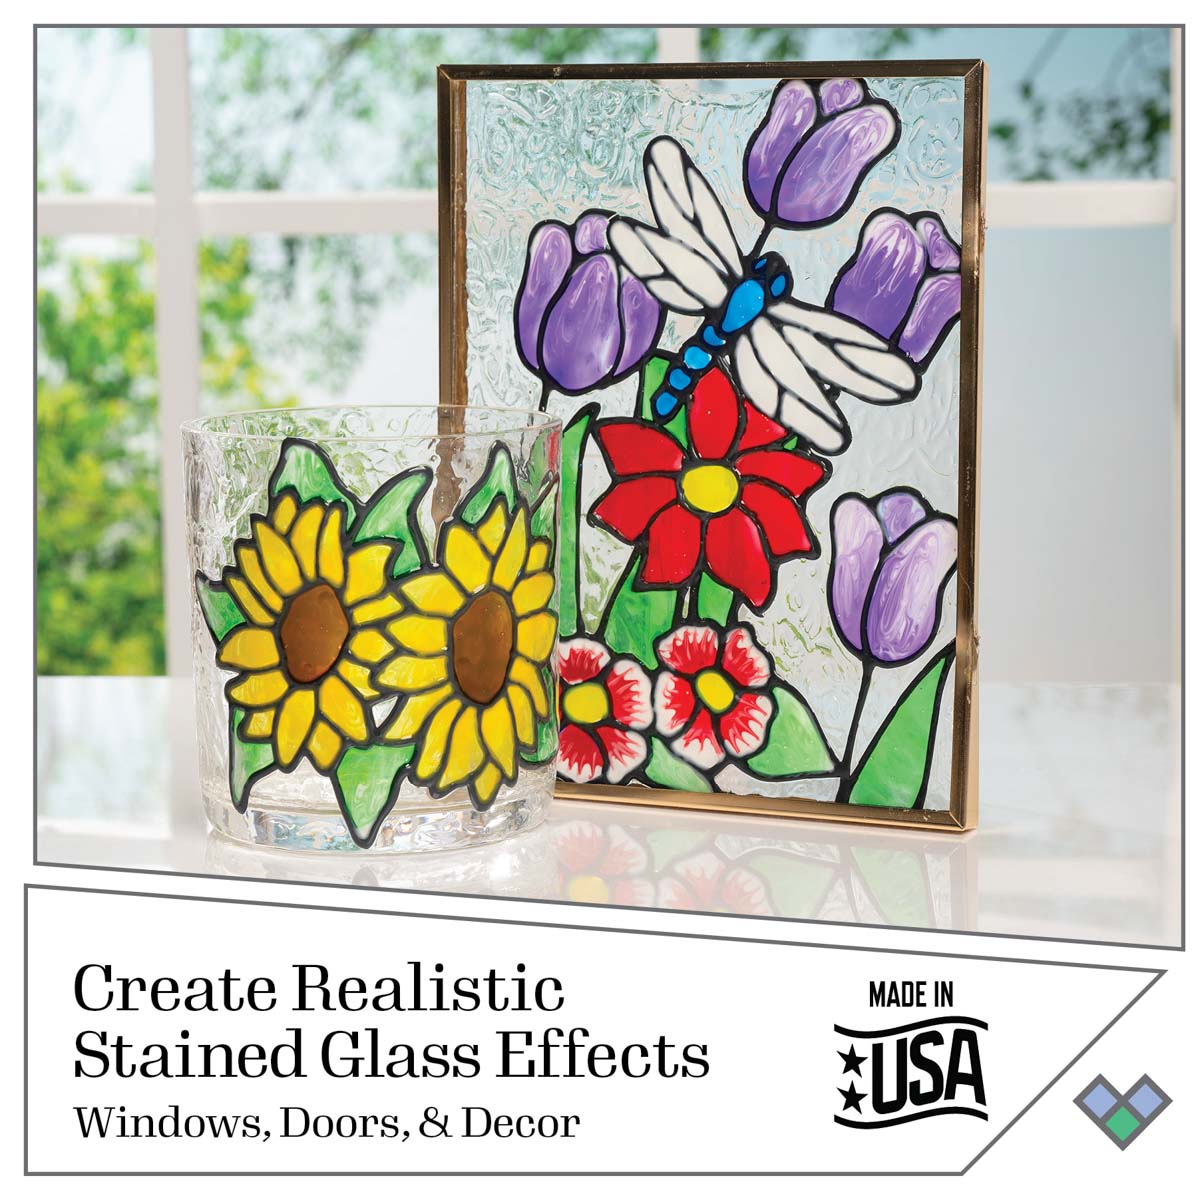 Gallery Glass ® Paint Set - Top 8 Color Set - GG8SET